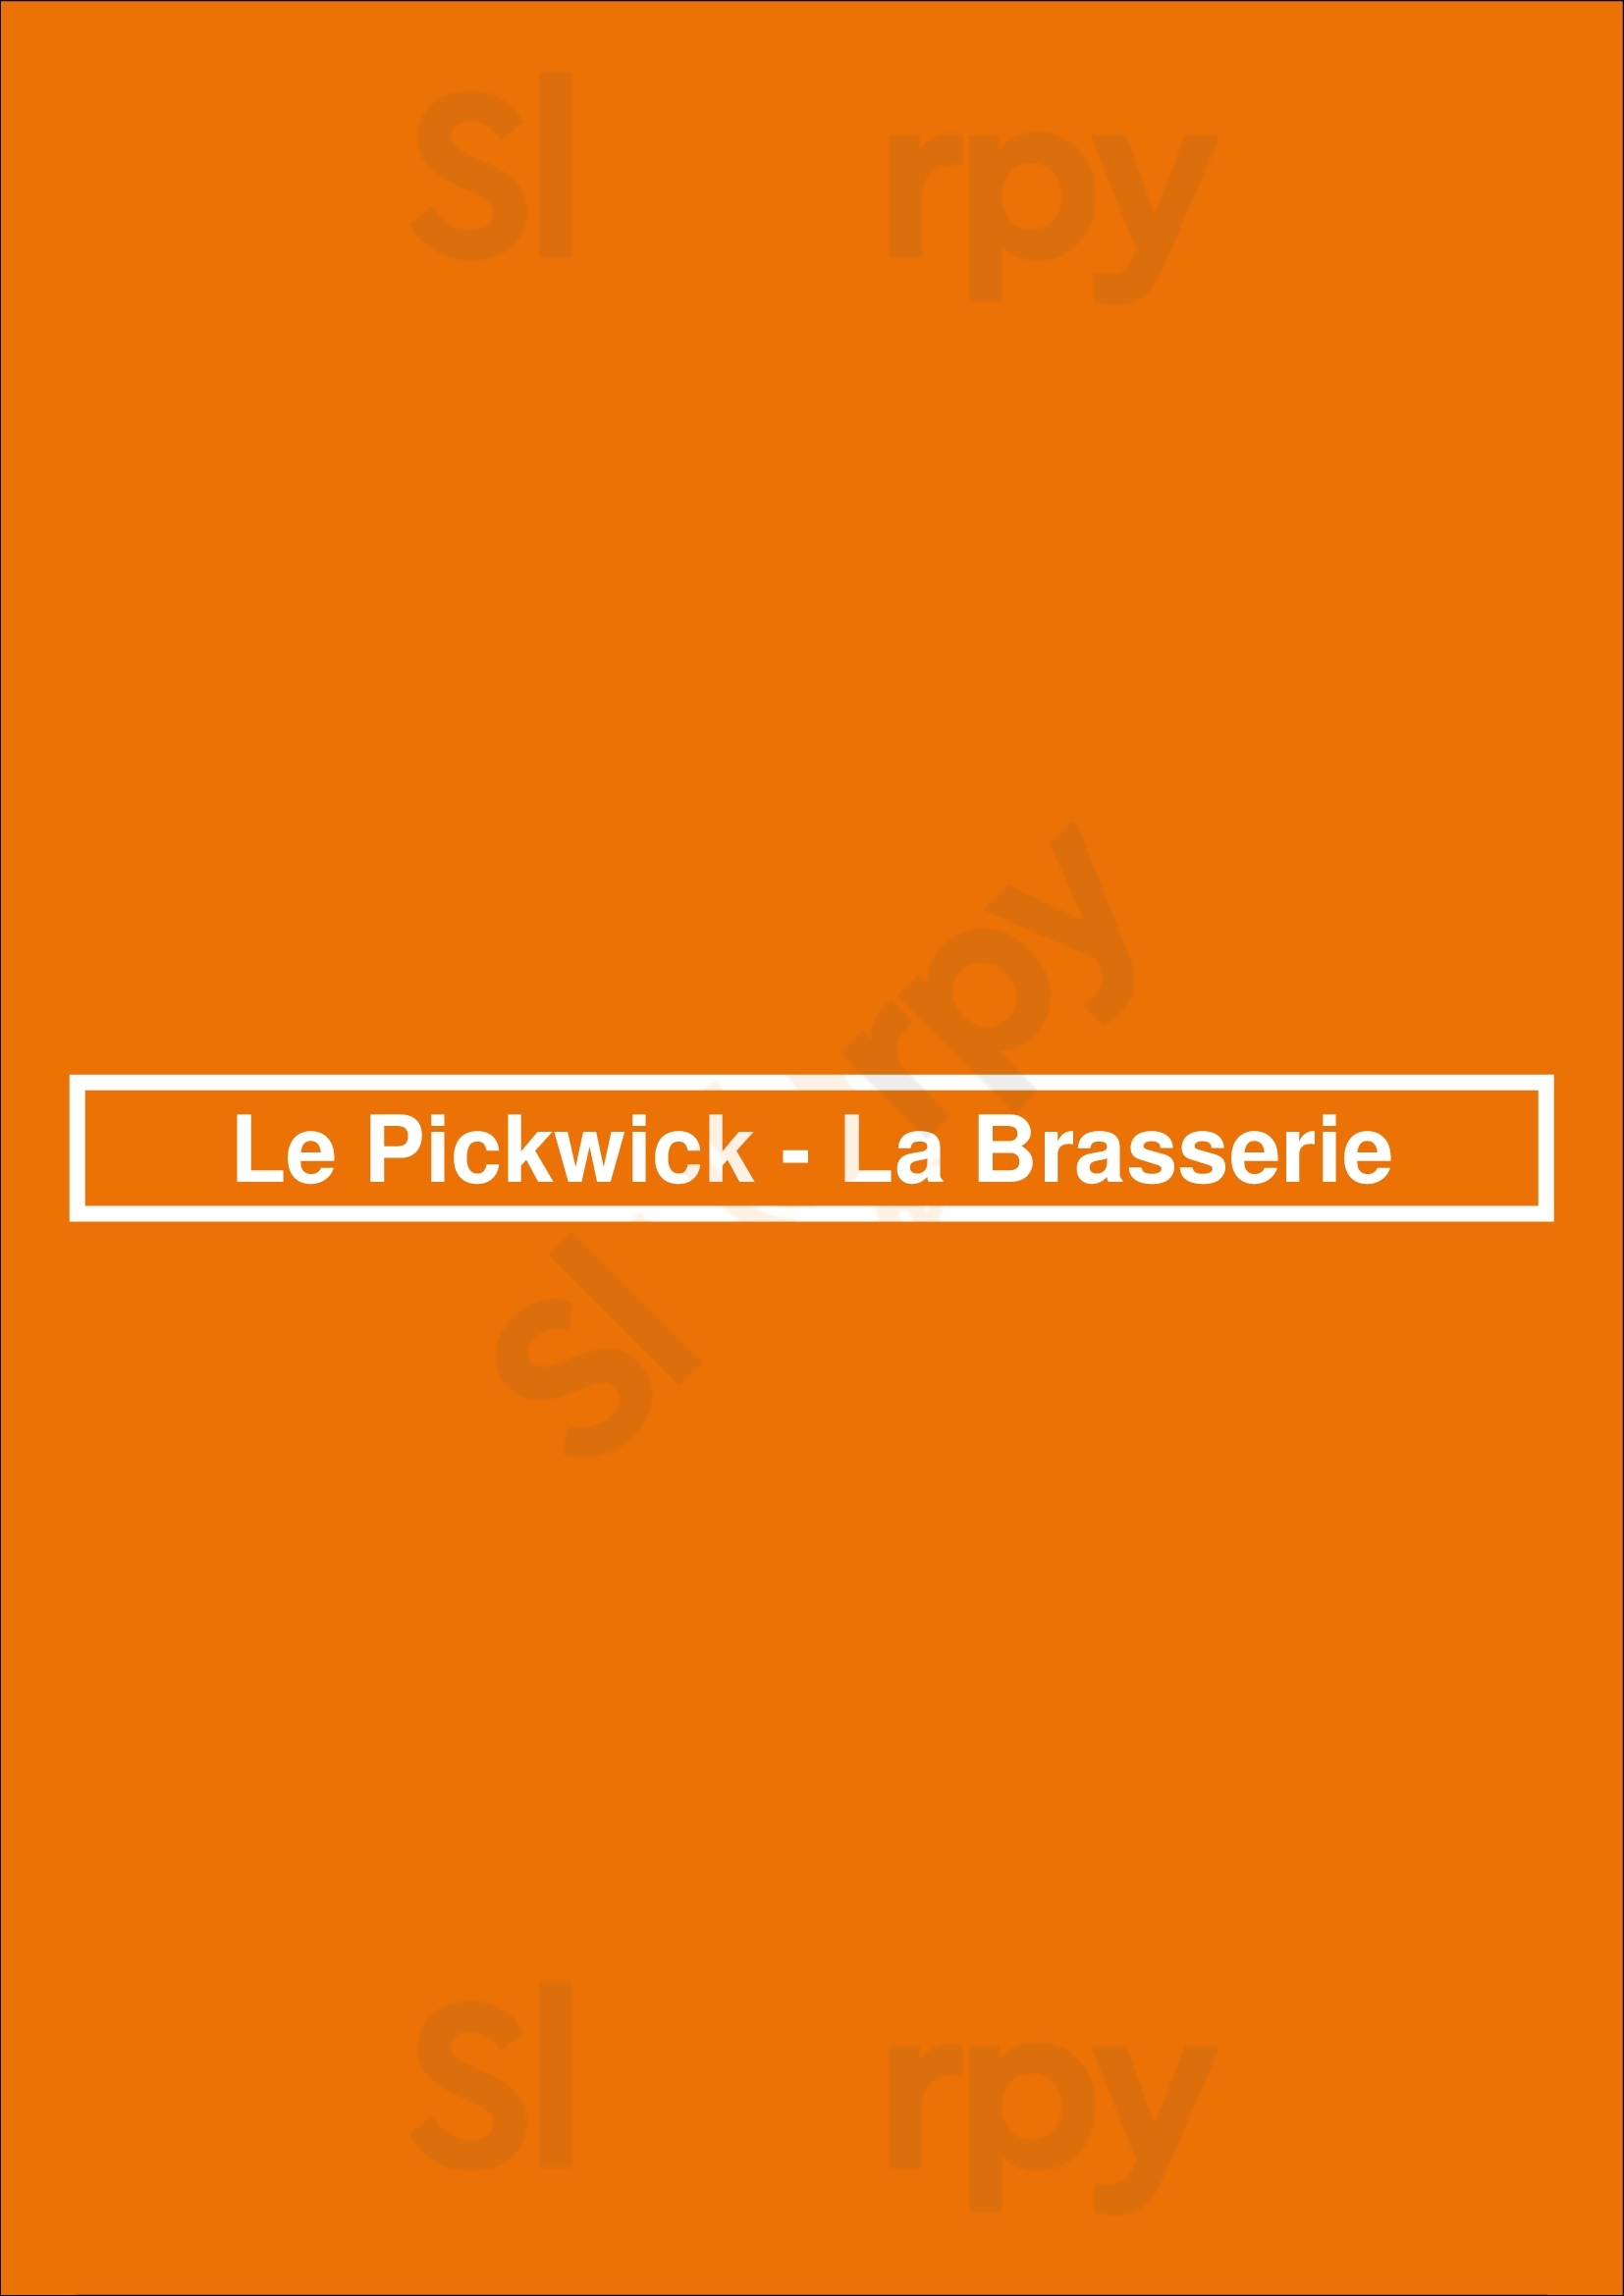 Le Pickwick - La Brasserie Ixelles Menu - 1